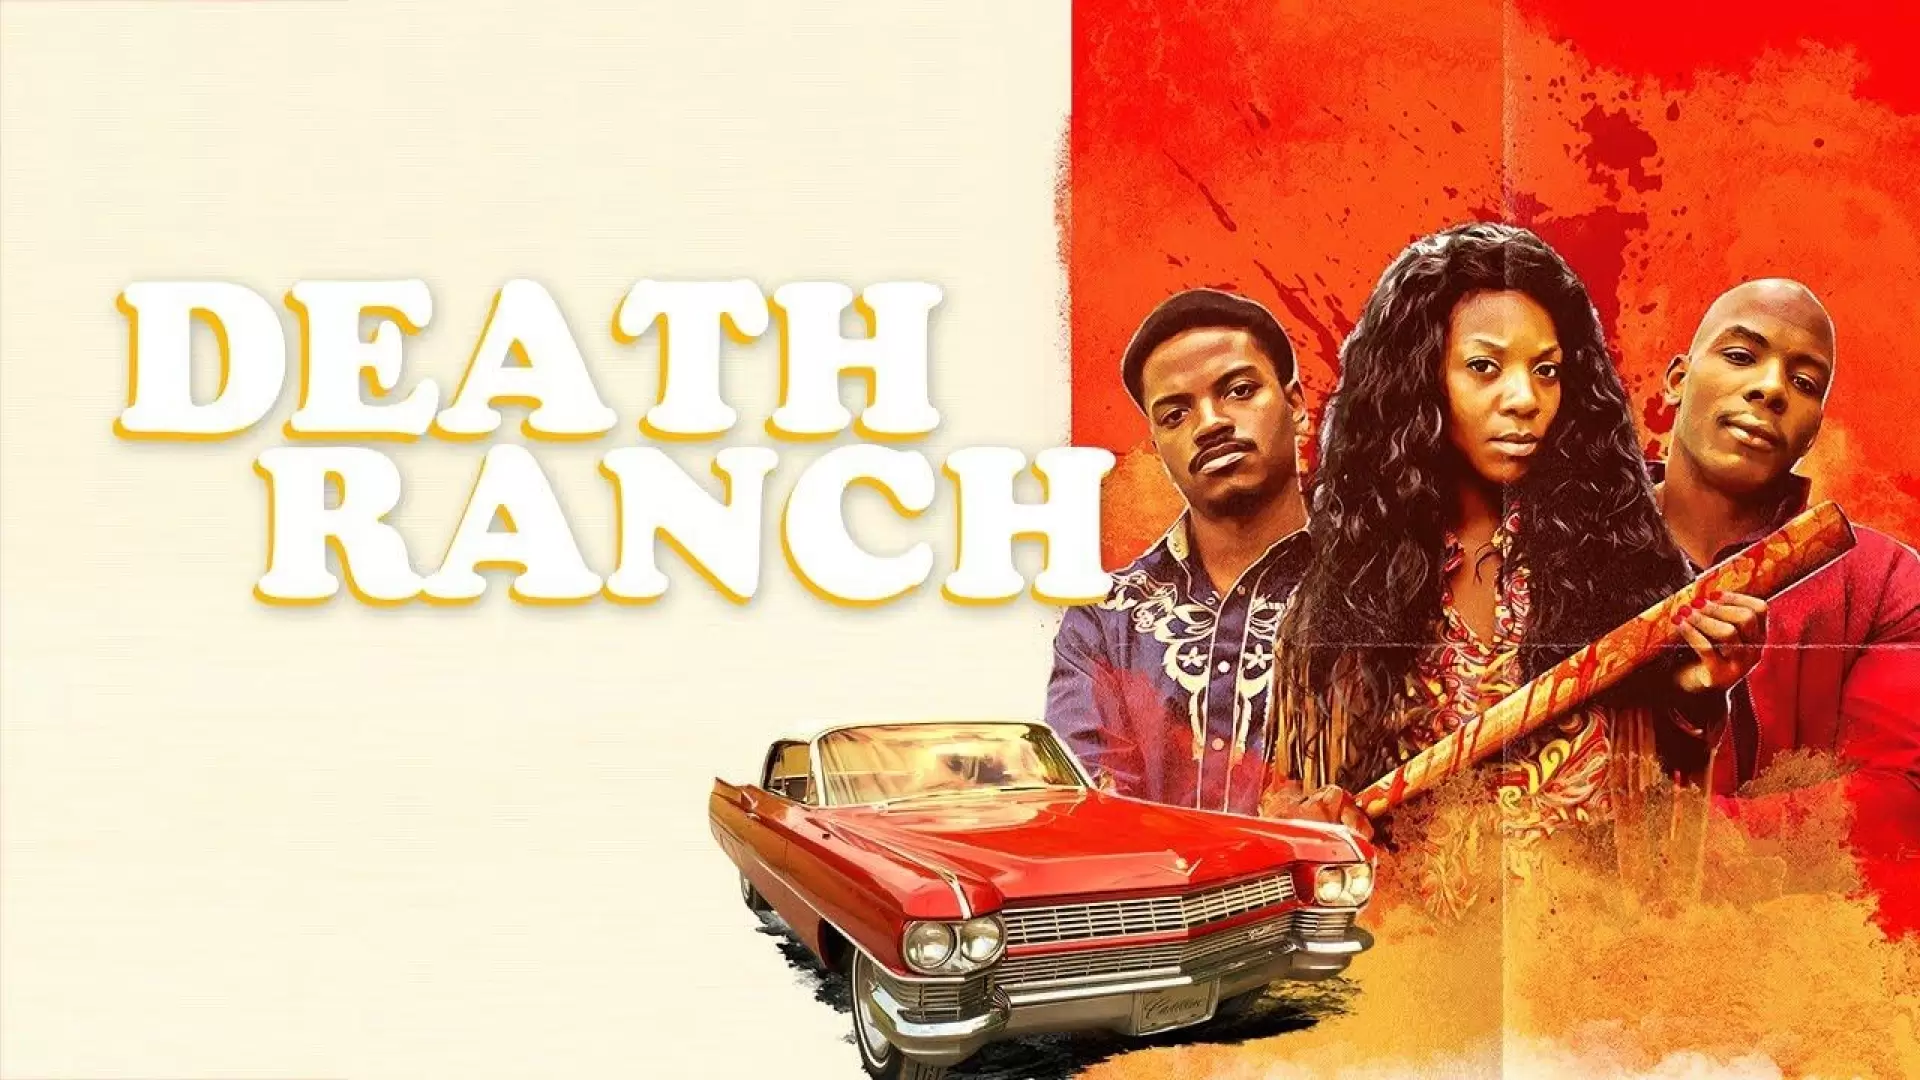 دانلود فیلم Death Ranch 2020 (مزرعه مرگ)